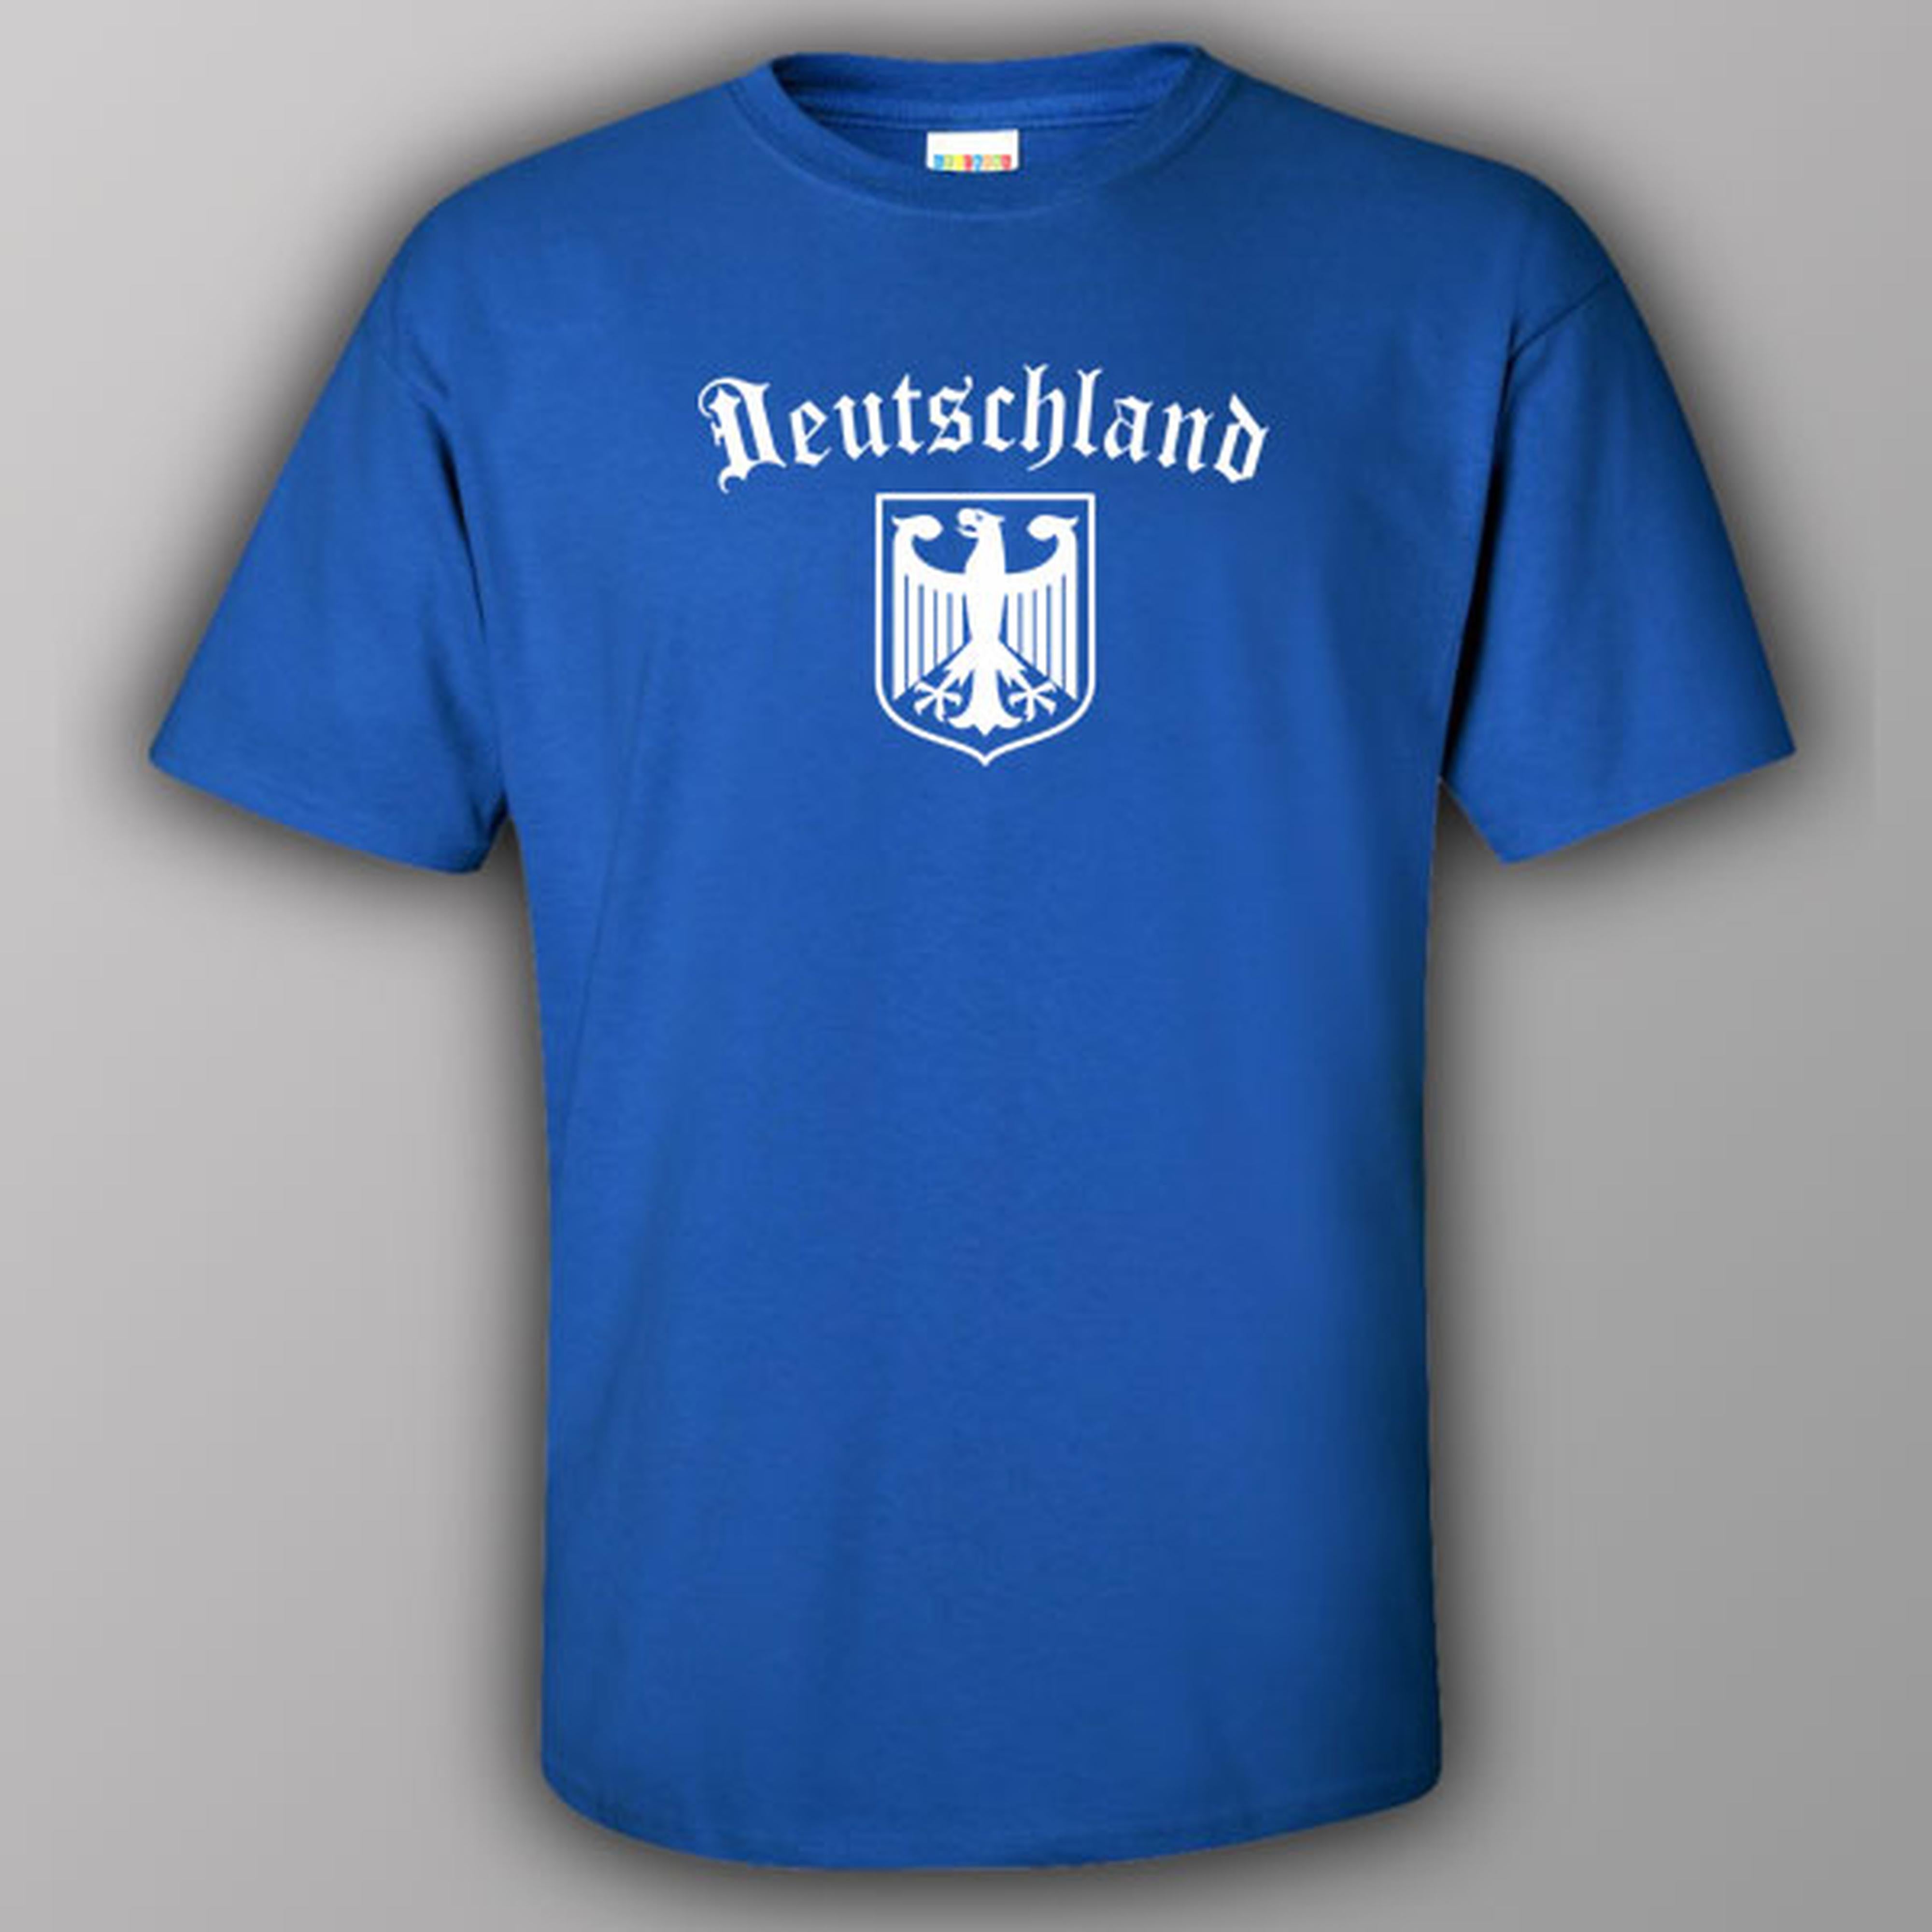 Deutschland (Germany) - T-shirt